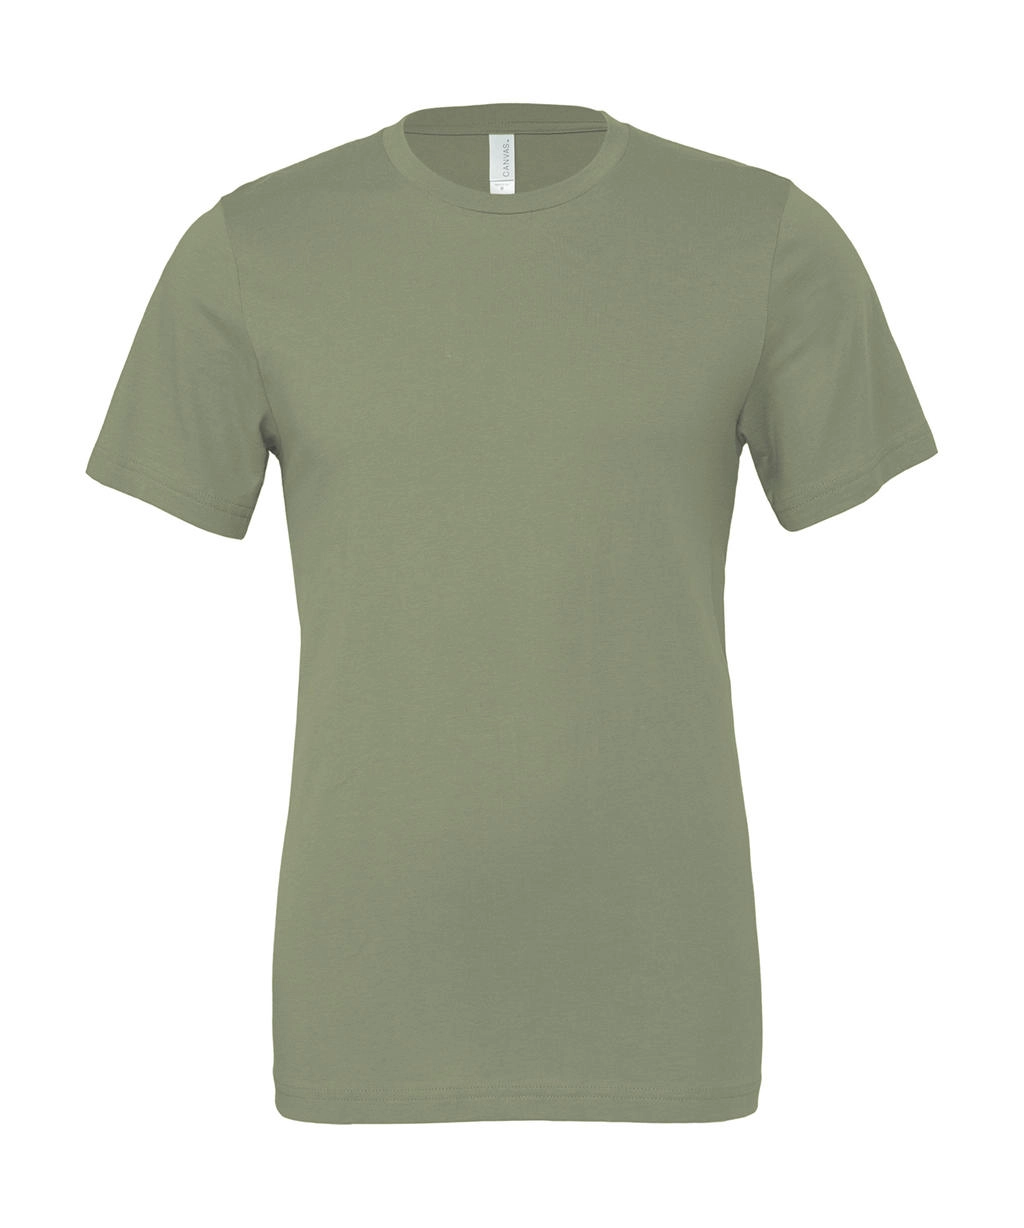 Unisex Jersey Short Sleeve Tee zum Besticken und Bedrucken in der Farbe Military Green mit Ihren Logo, Schriftzug oder Motiv.